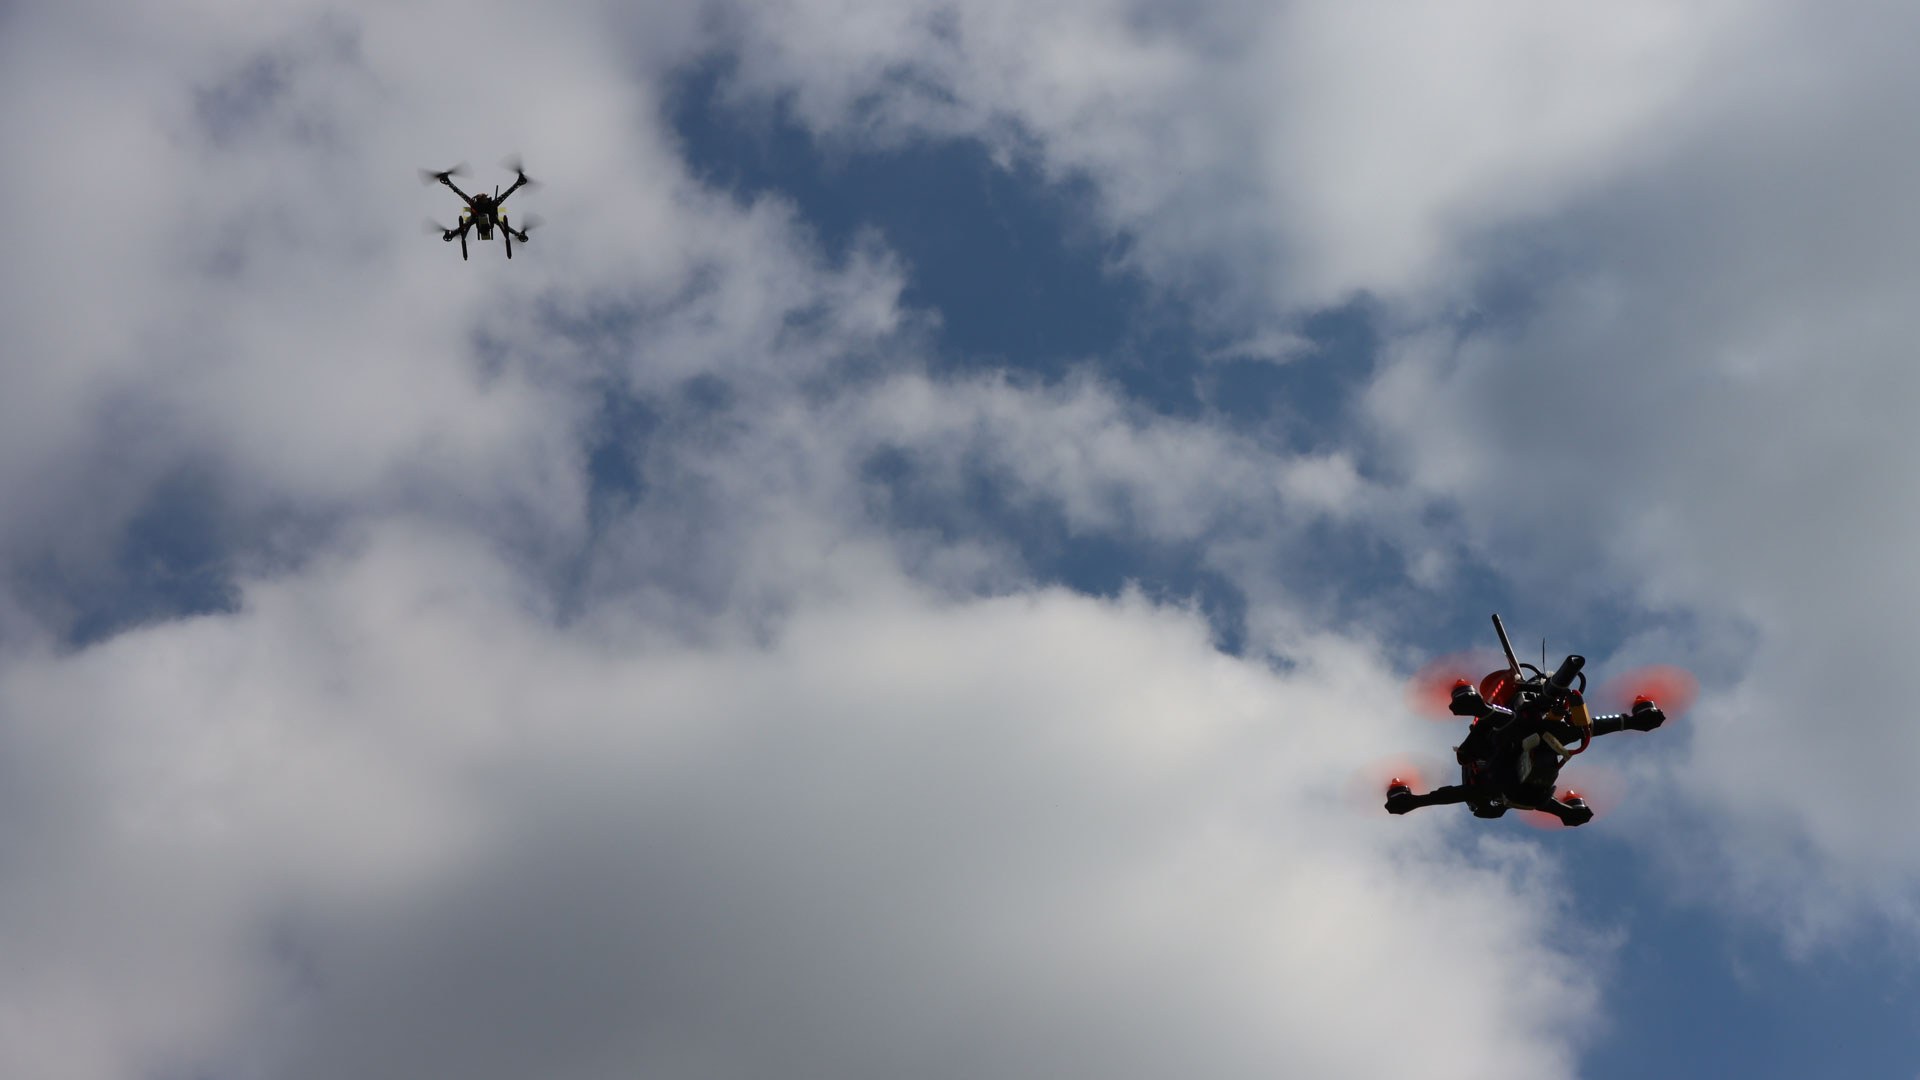 Das DLR forscht im Projekt „Drohnenabwehr“ unter anderem mit dem Demonstrator CUDO (Counter-UAS Demonstrator) an Technologien, um einen Schutz vor widerrechtlich betriebenen Drohnen zu gewährleisten.